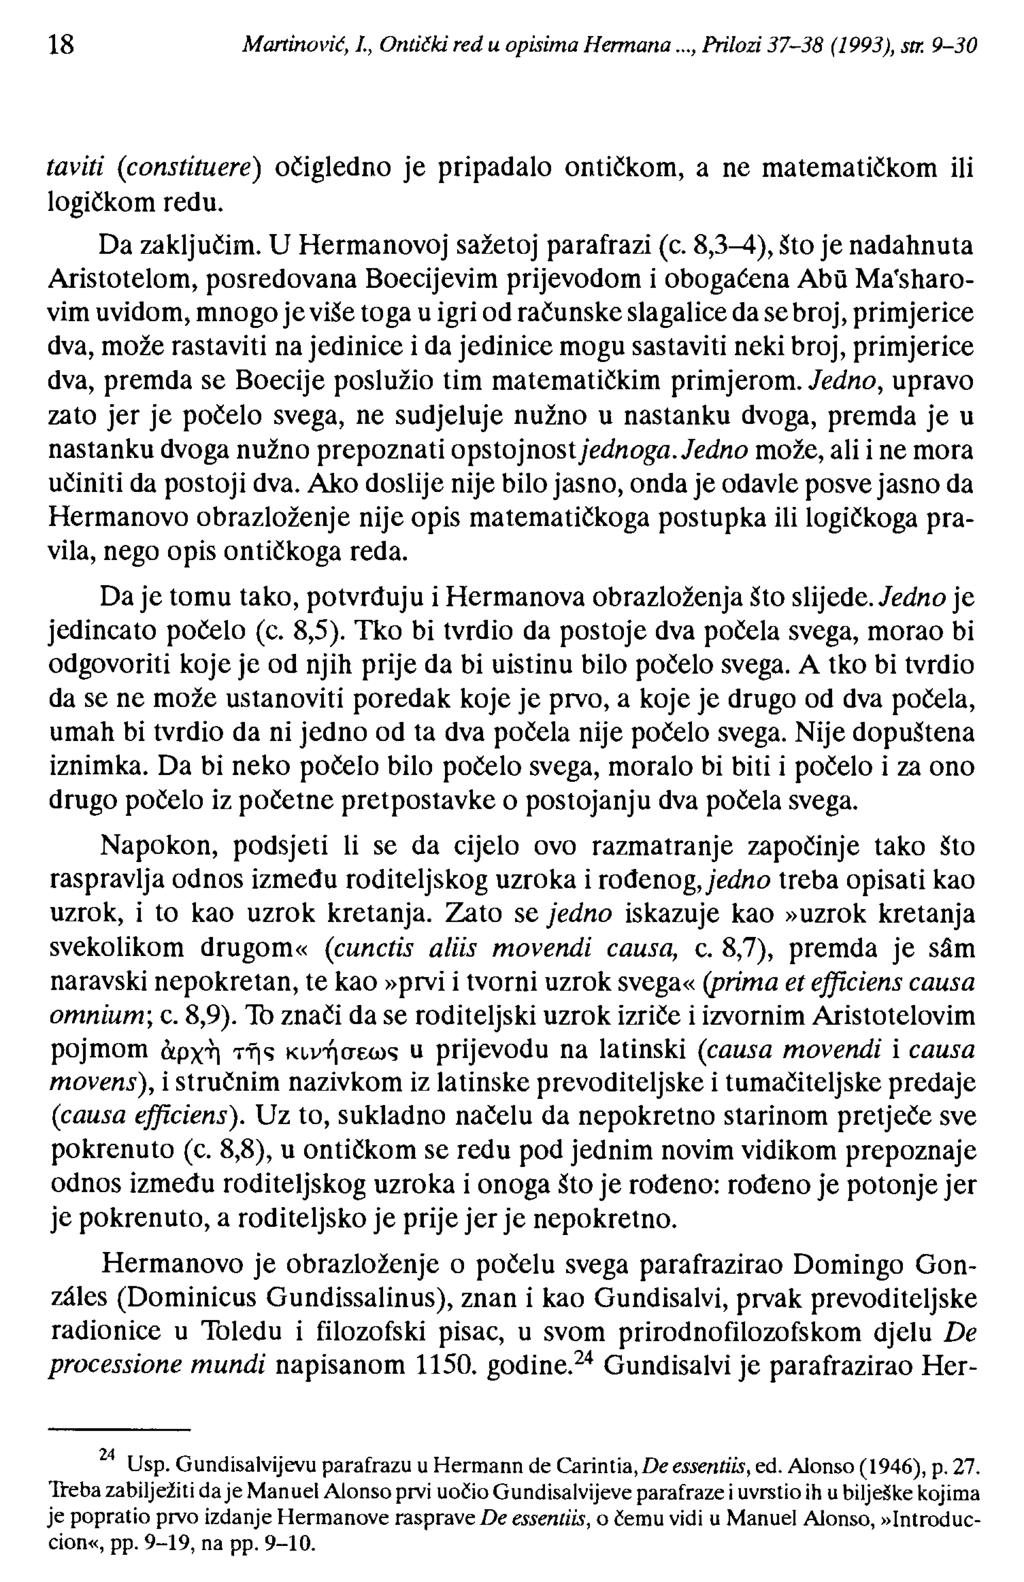 18 Martinović, 1., Ontički red u opisima Hennana..., Prilozi 37-38 (1993), str. 9-30 taviti (constituere) očigledno logičkom redu. je pripadalo ontičkom, a ne matematičkom ili Da zaključim.